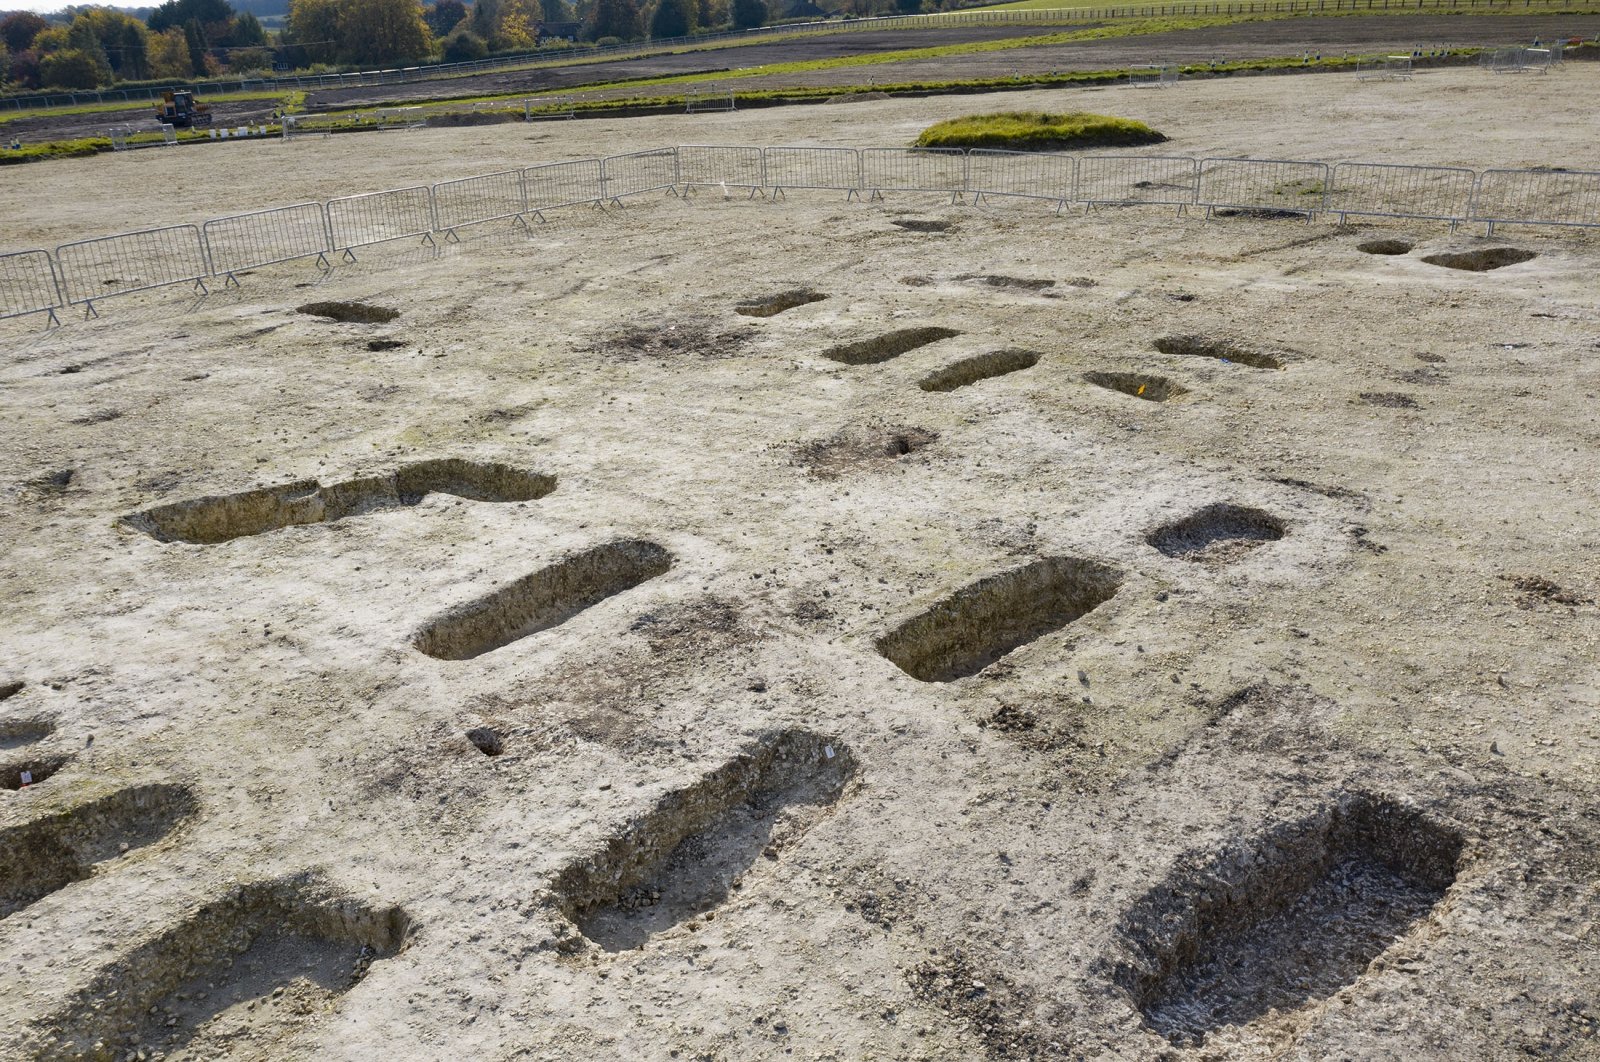 Salah satu situs pemakaman Anglo-Saxon terbesar di Inggris ditemukan di sepanjang jalur kereta